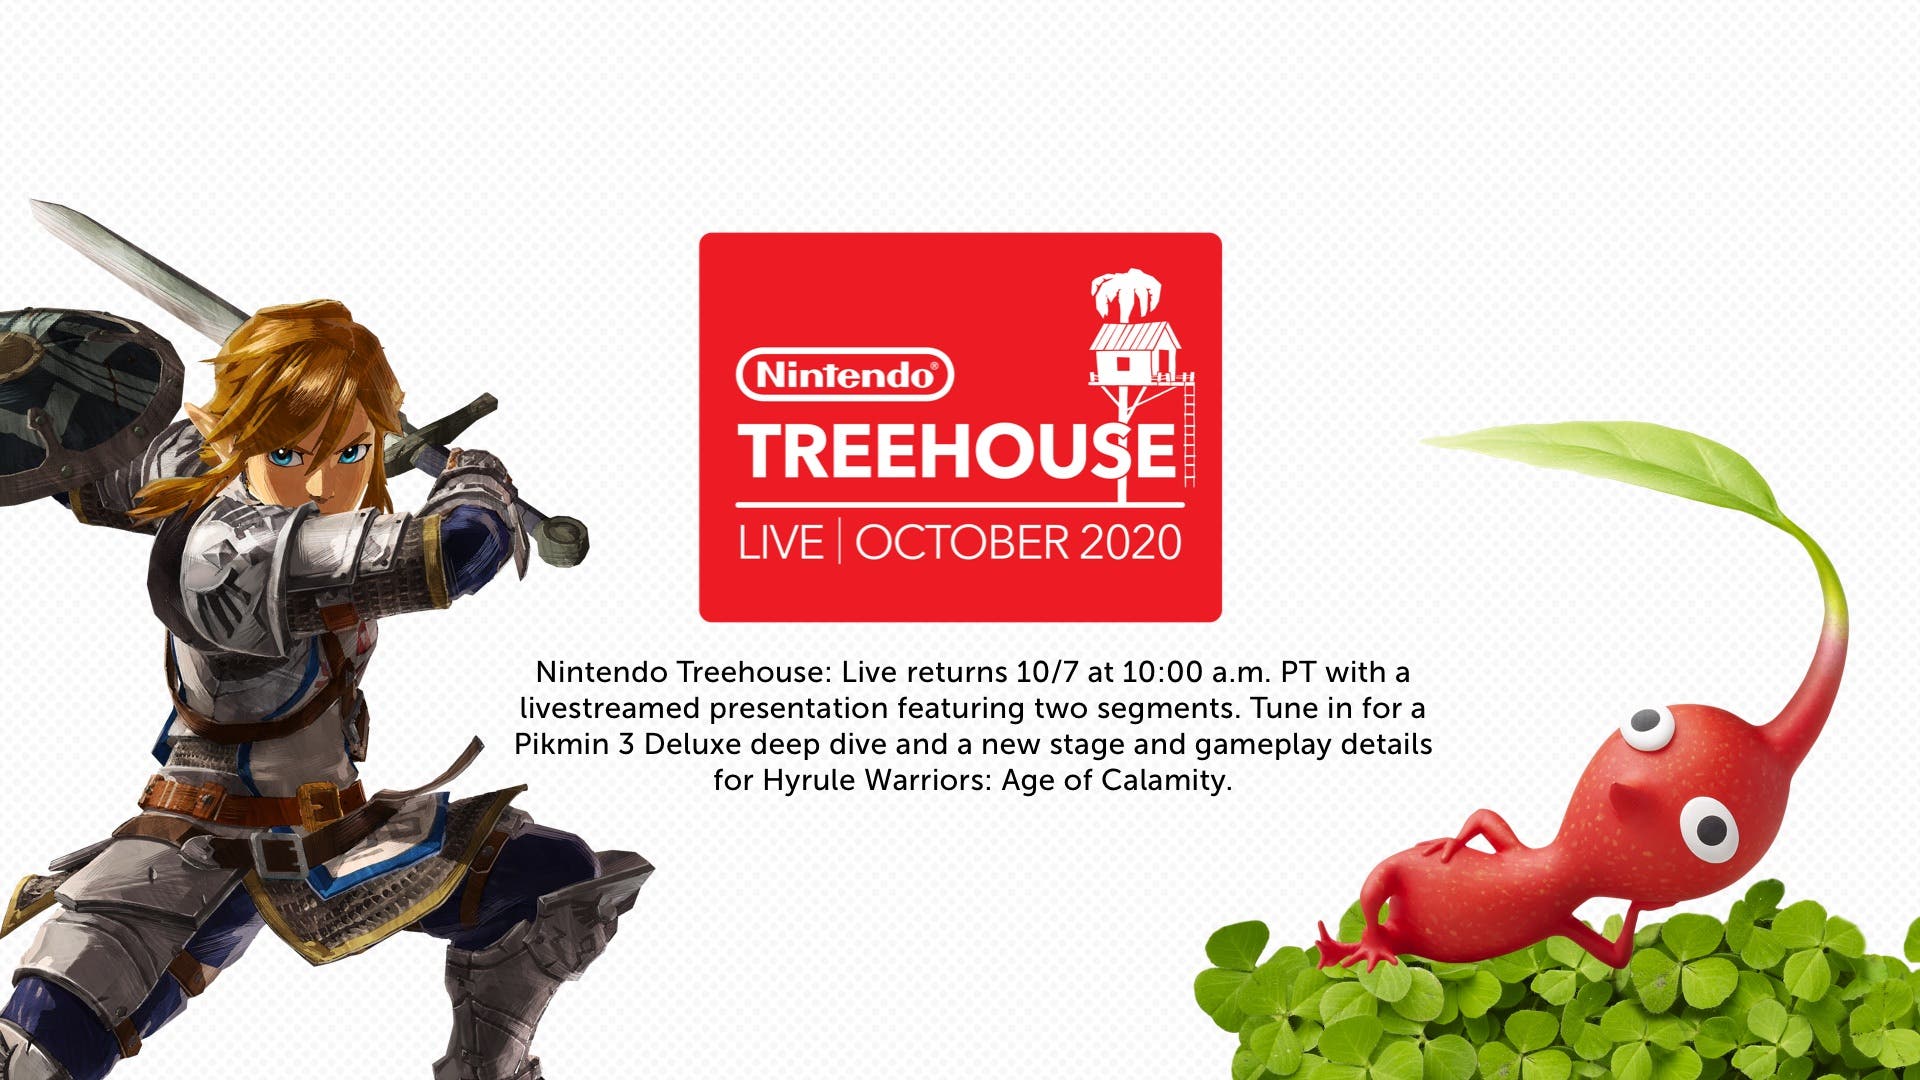 Ya puedes ver el diferido completo del Nintendo Treehouse Live de hoy con Pikmin 3 Deluxe y Hyrule Warriors: La era del cataclismo